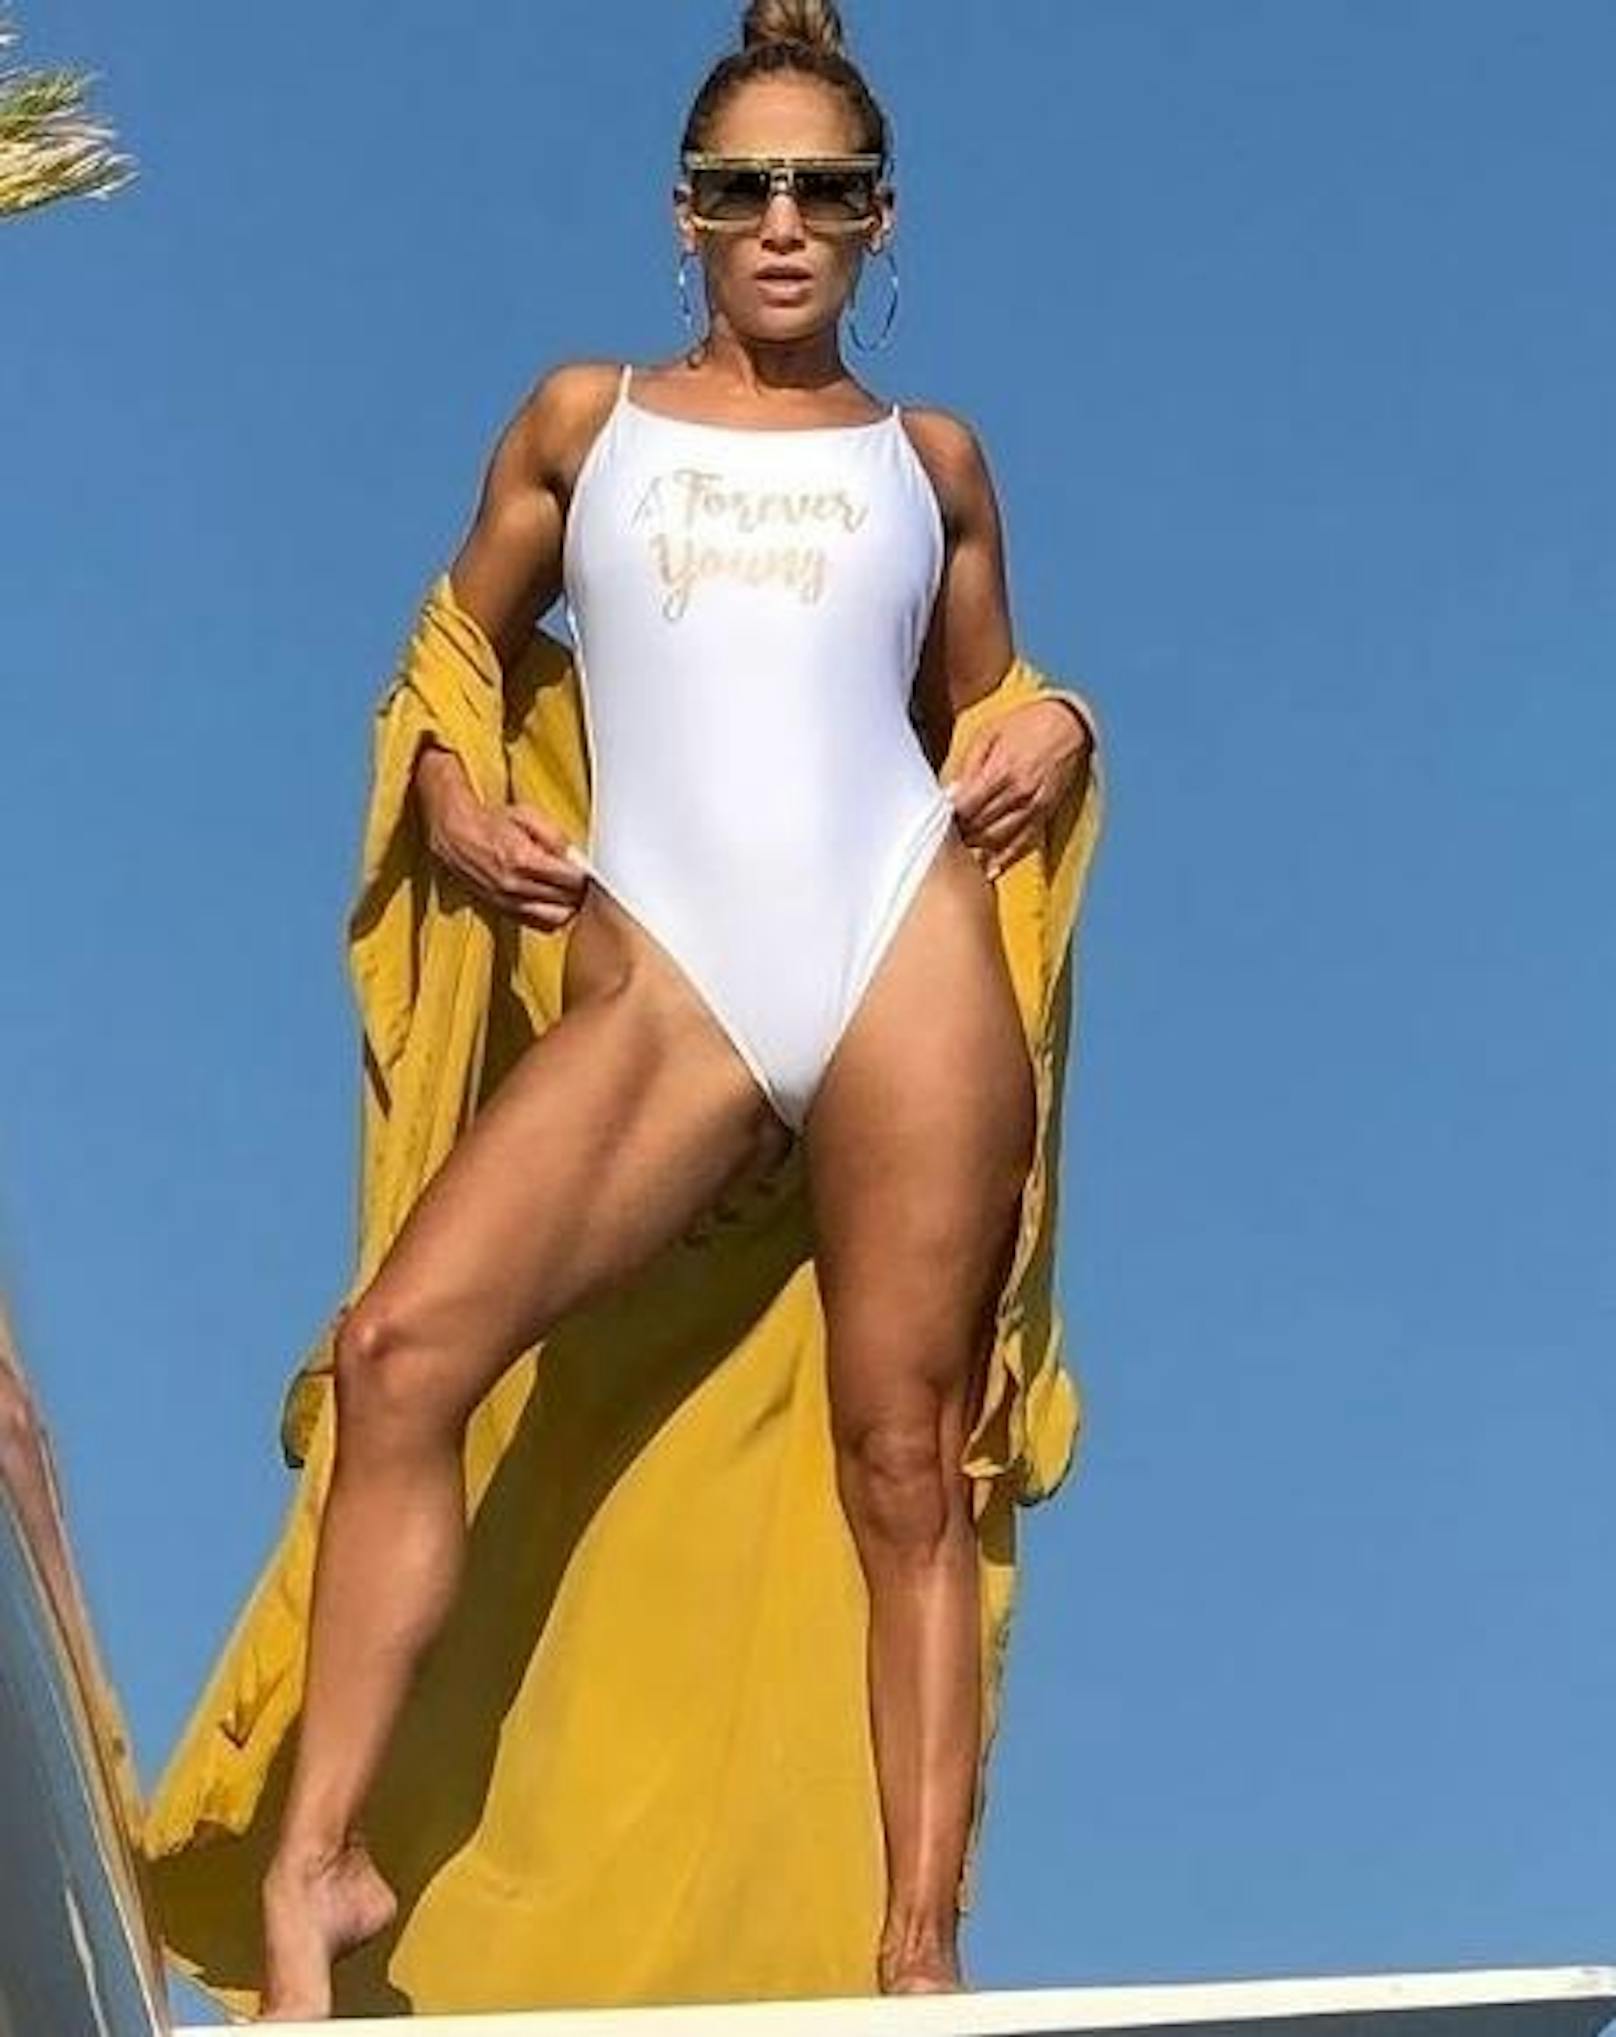 04.09.2019: Den Leitspruch "Forever Young", der da groß auf ihrem Badeanzug steht, möchte man Jennifer Lopez in Anbetracht der Tatsache, dass sie schon 50 Jahre alt ist, tatsächlich glauben.